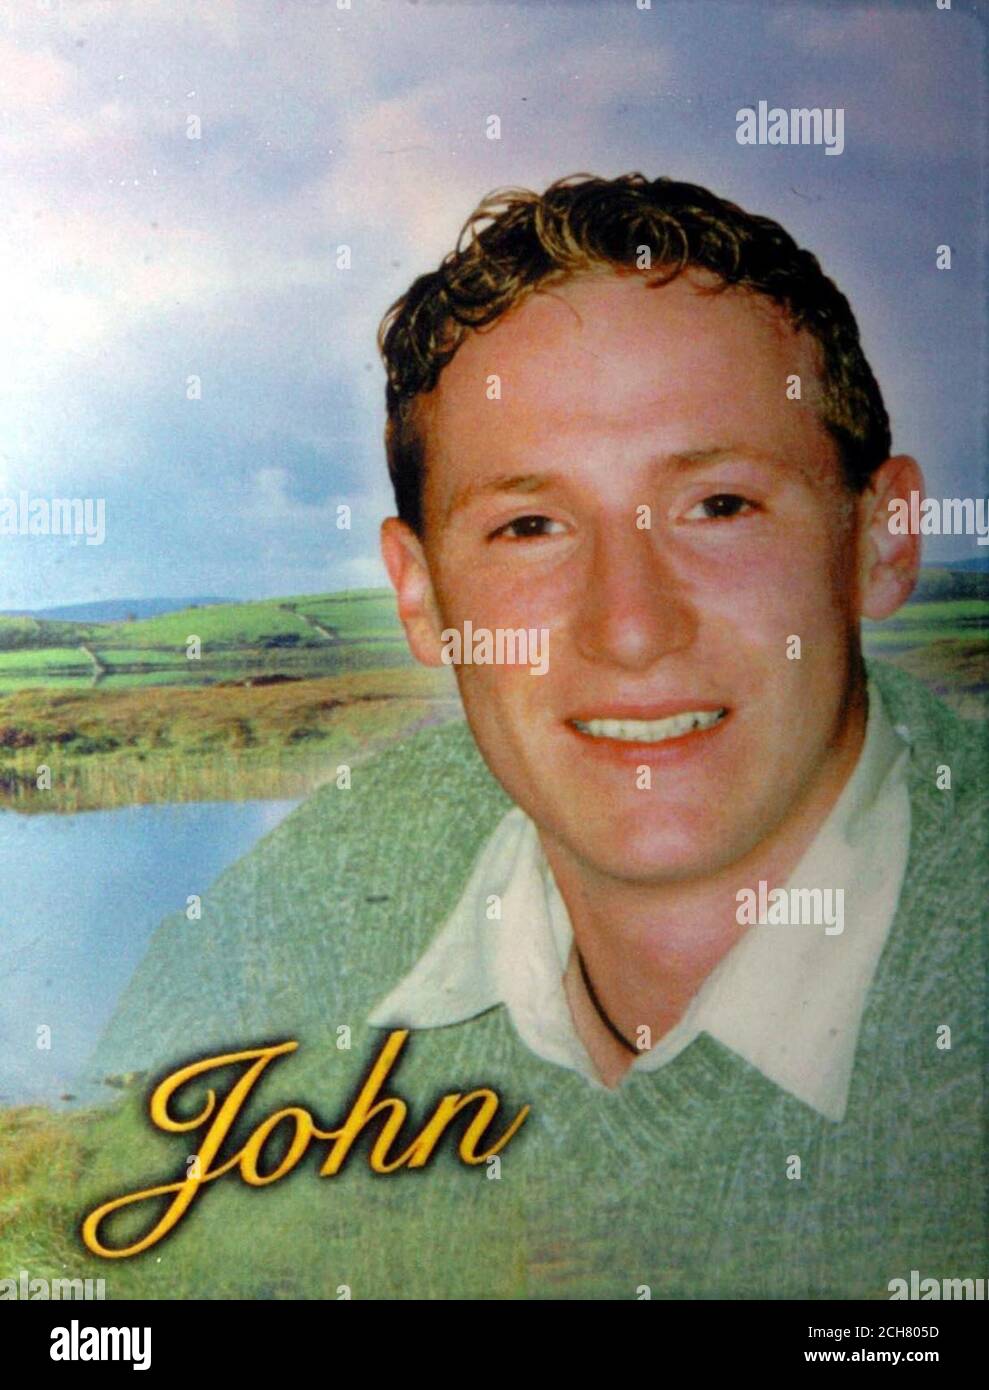 Non daté, collectez la photo d'une carte du souvenir montrant une photo de John Hanrahan, qui a été trouvé mort accidentellement à Dublin Coroners court après qu'il a perdu le contrôle du kart qu'il conduisait à l'hippodrome de Mondello Park l'année dernière, le 25 mai, lors d'un tour d'entraînement lors d'une rencontre. Banque D'Images